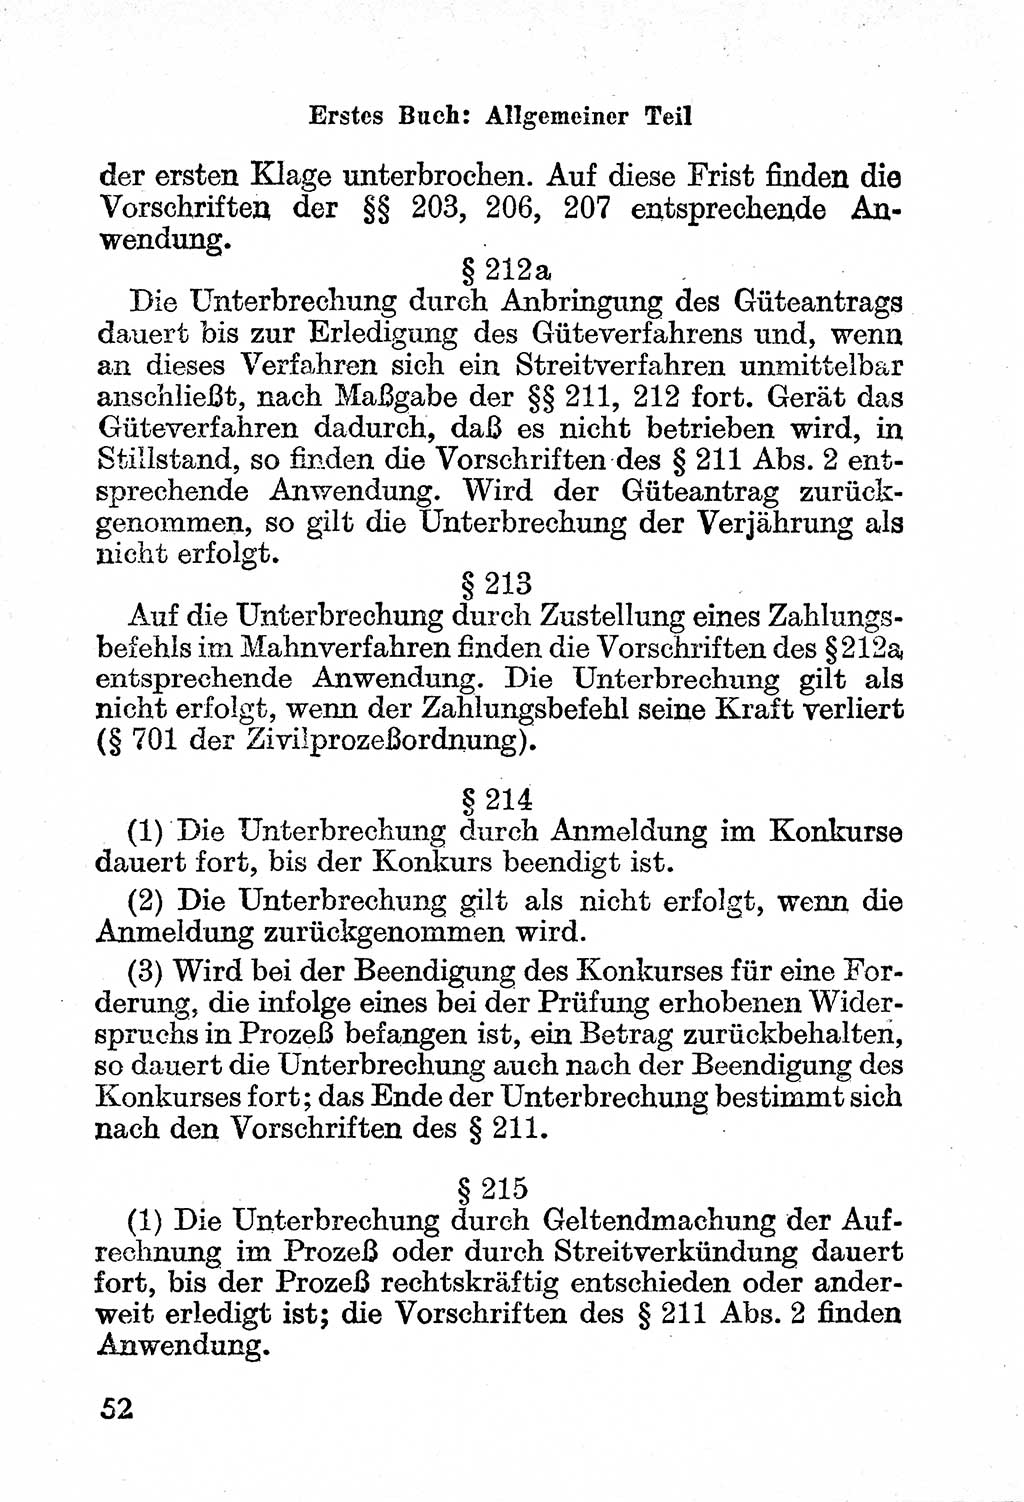 Bürgerliches Gesetzbuch (BGB) nebst wichtigen Nebengesetzen [Deutsche Demokratische Republik (DDR)] 1956, Seite 52 (BGB Nebenges. DDR 1956, S. 52)